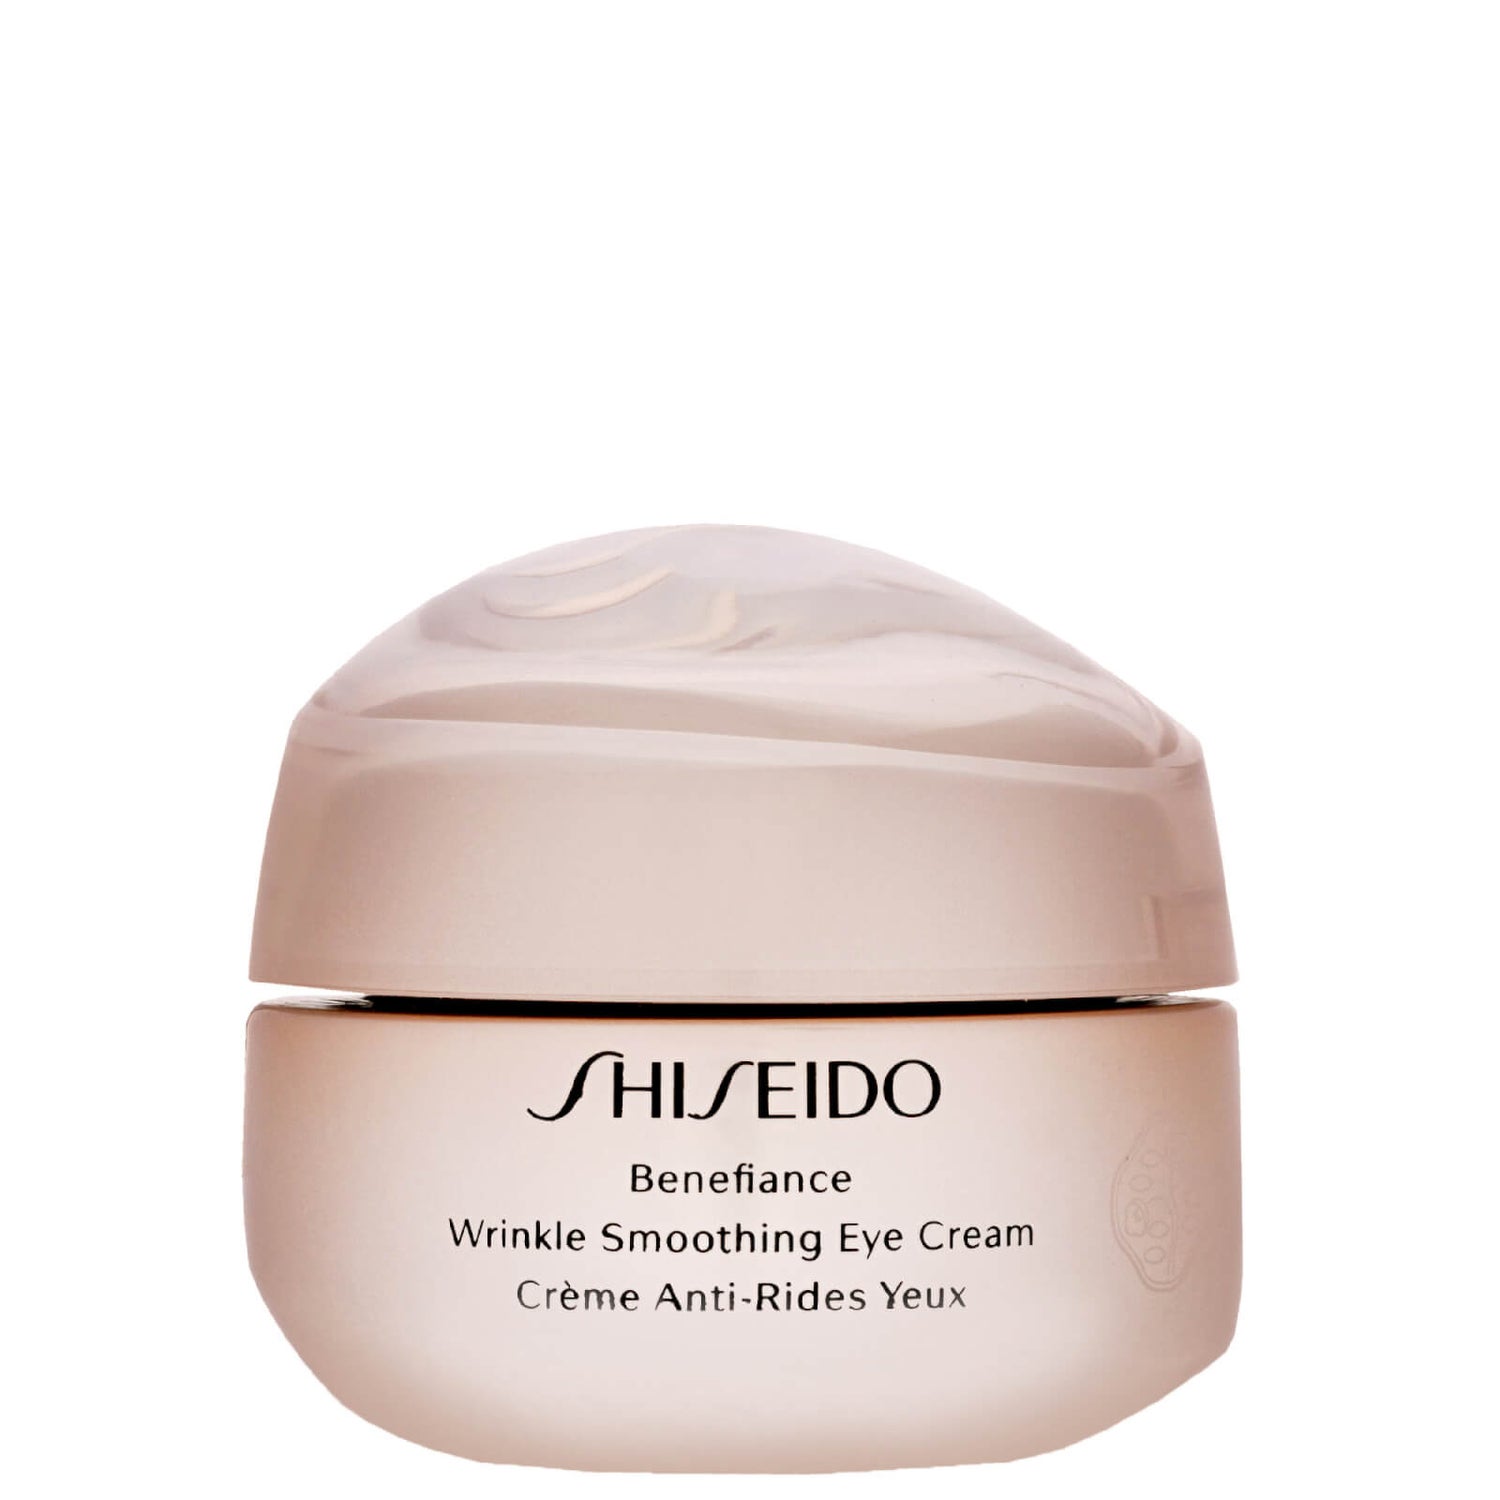 Shiseido wrinkle smoothing. Shiseido Benefiance Eye Cream. Shiseido Wrinkle Smoothing Cream. Shiseido Anti Wrinkle Cream. Shiseido Benefiance Eye Cream купить.